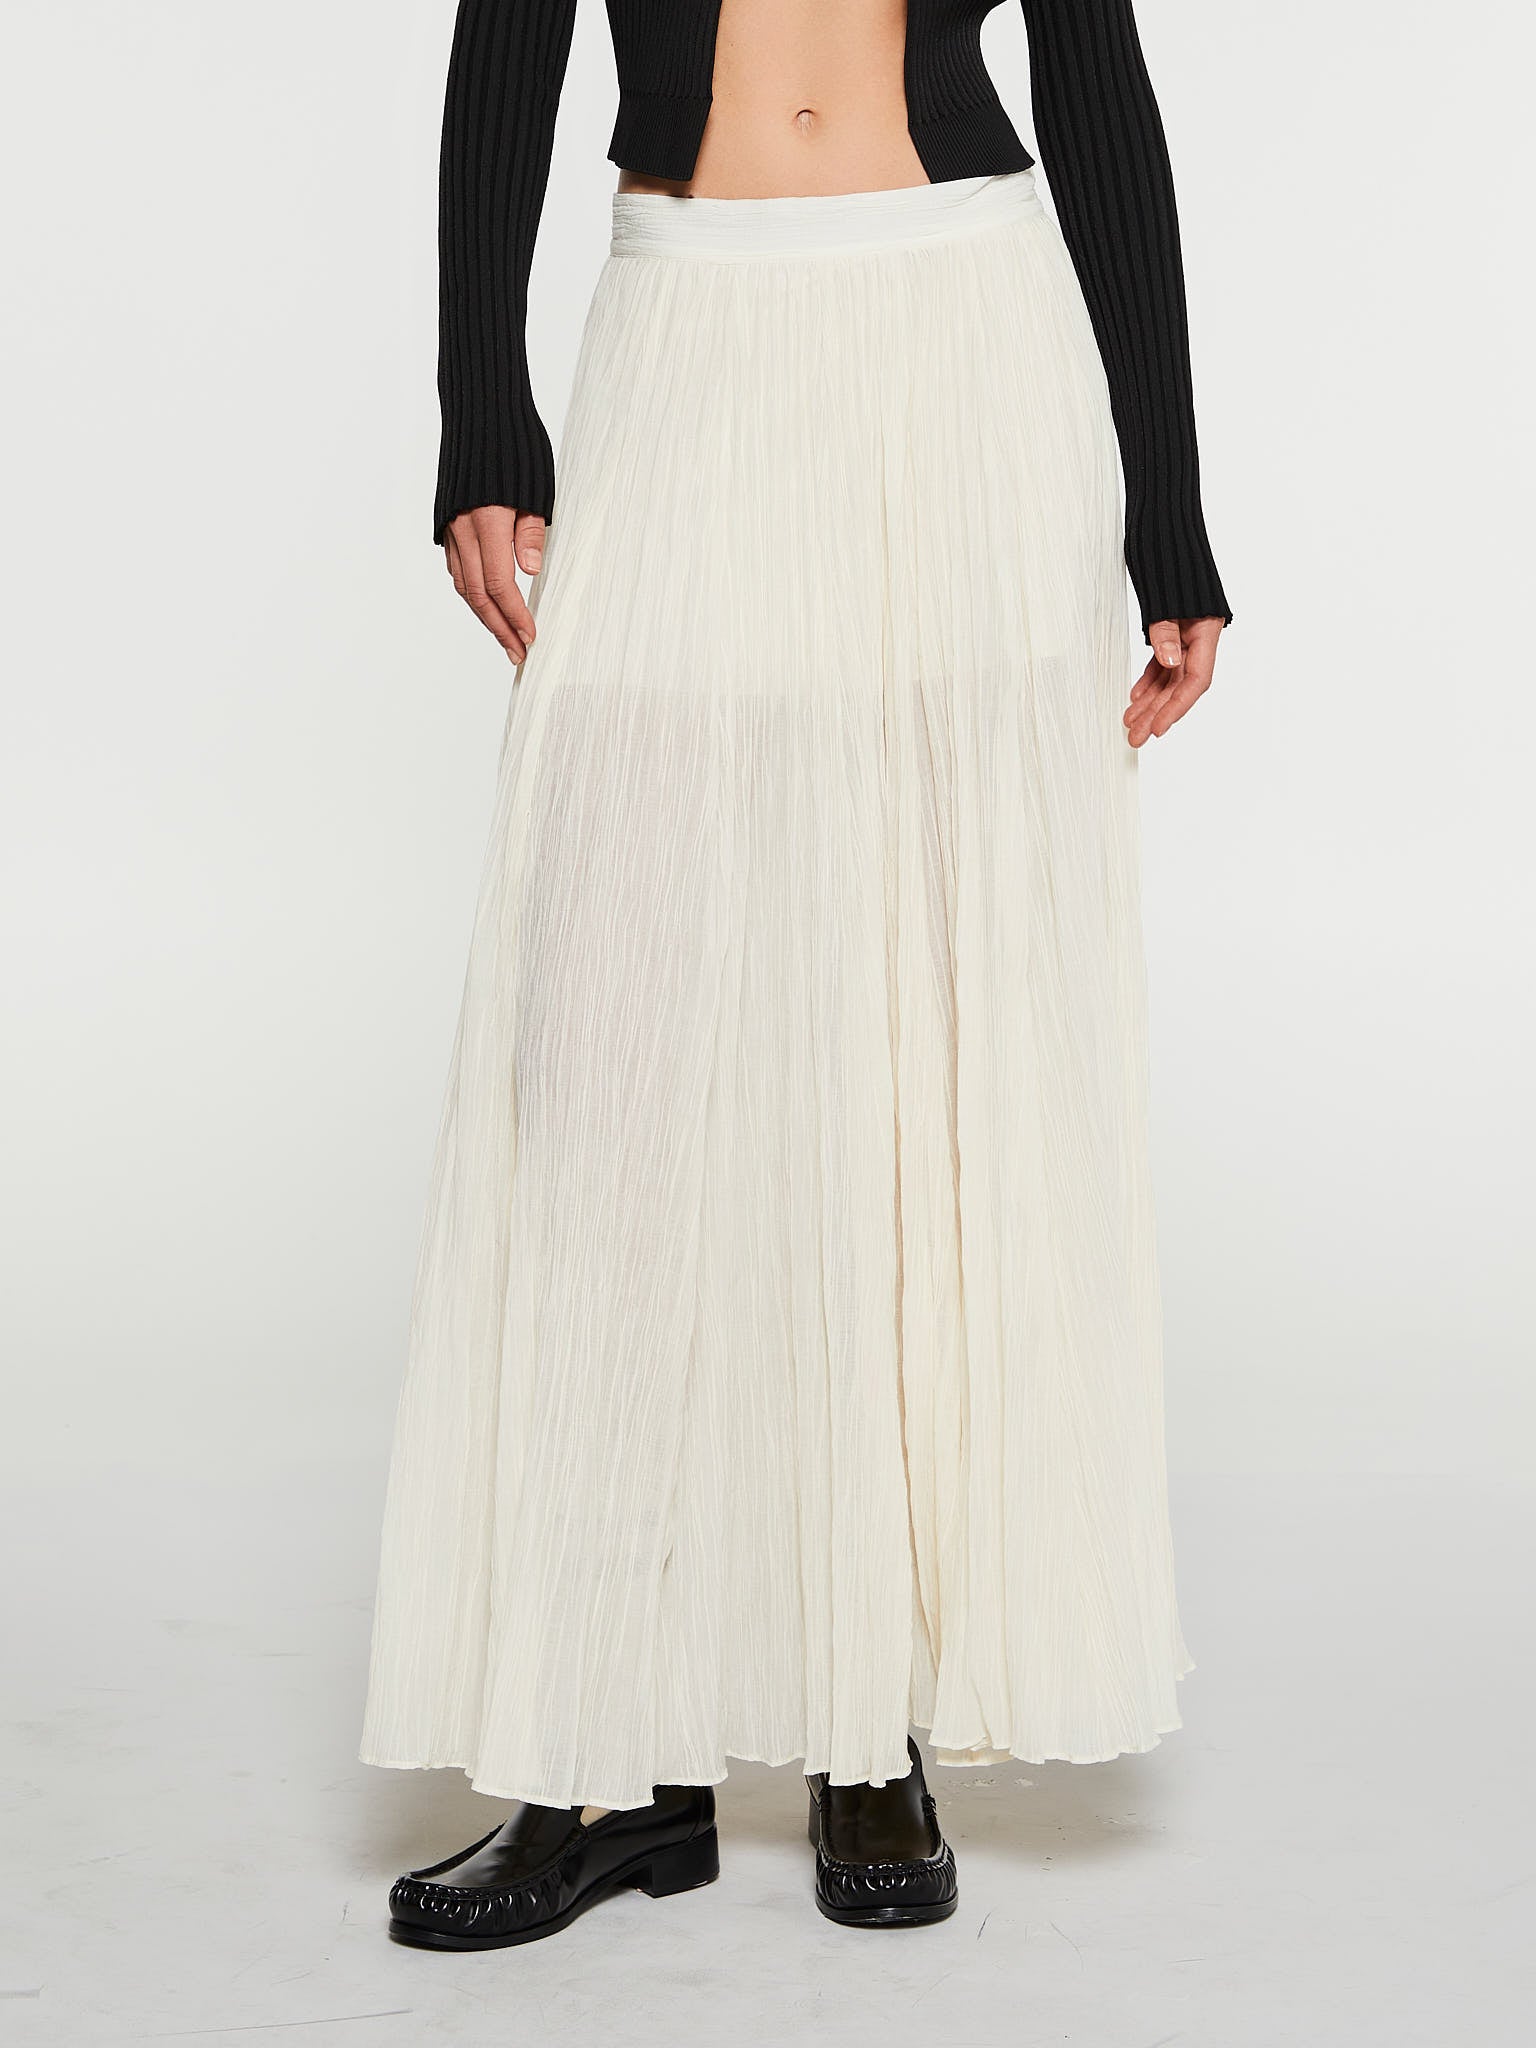 Crinckled Plissé Skirt in White